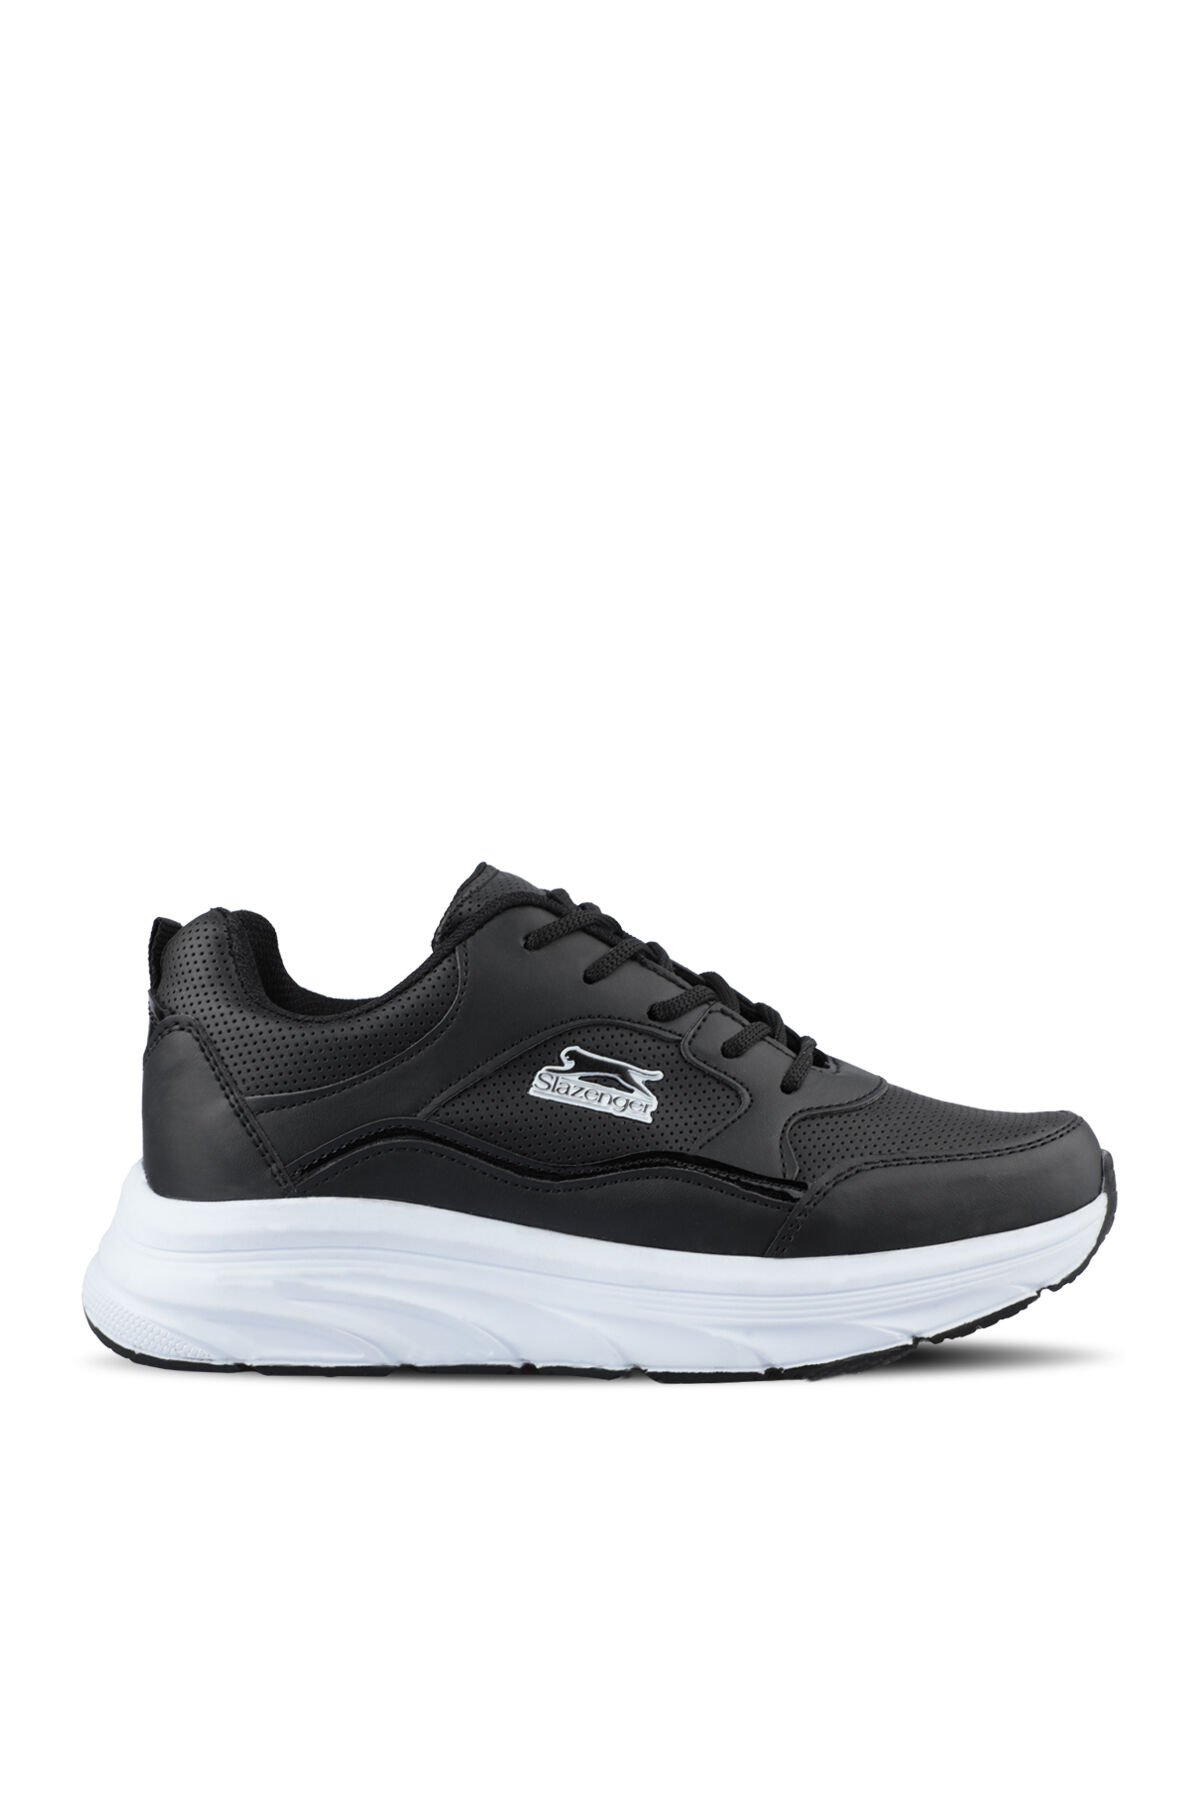 Slazenger KAROLA I Sneaker Kadın Ayakkabı Siyah / Beyaz - Thumbnail